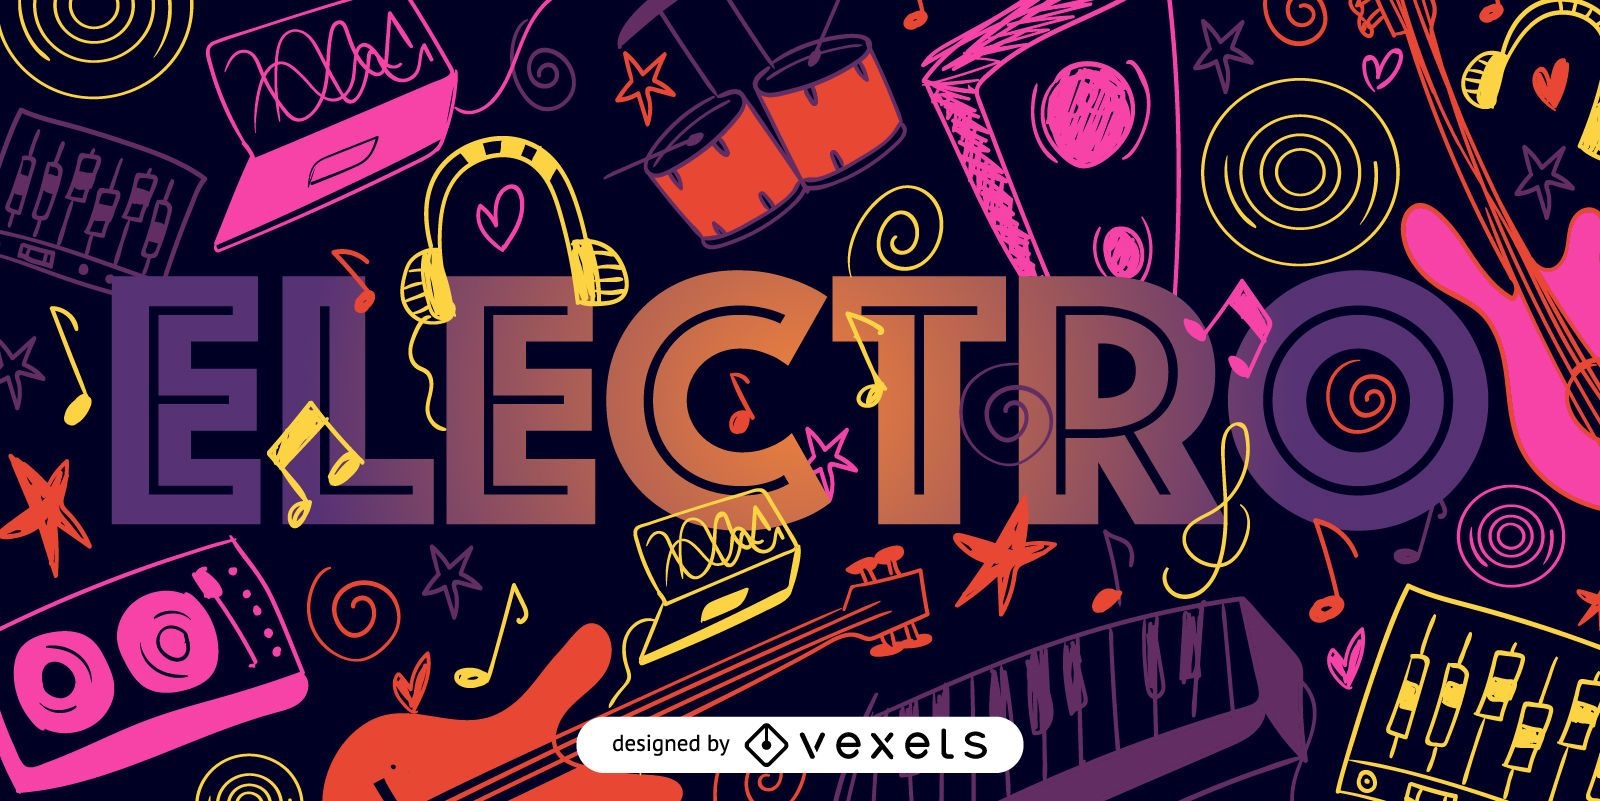 Electro music doodle illustration